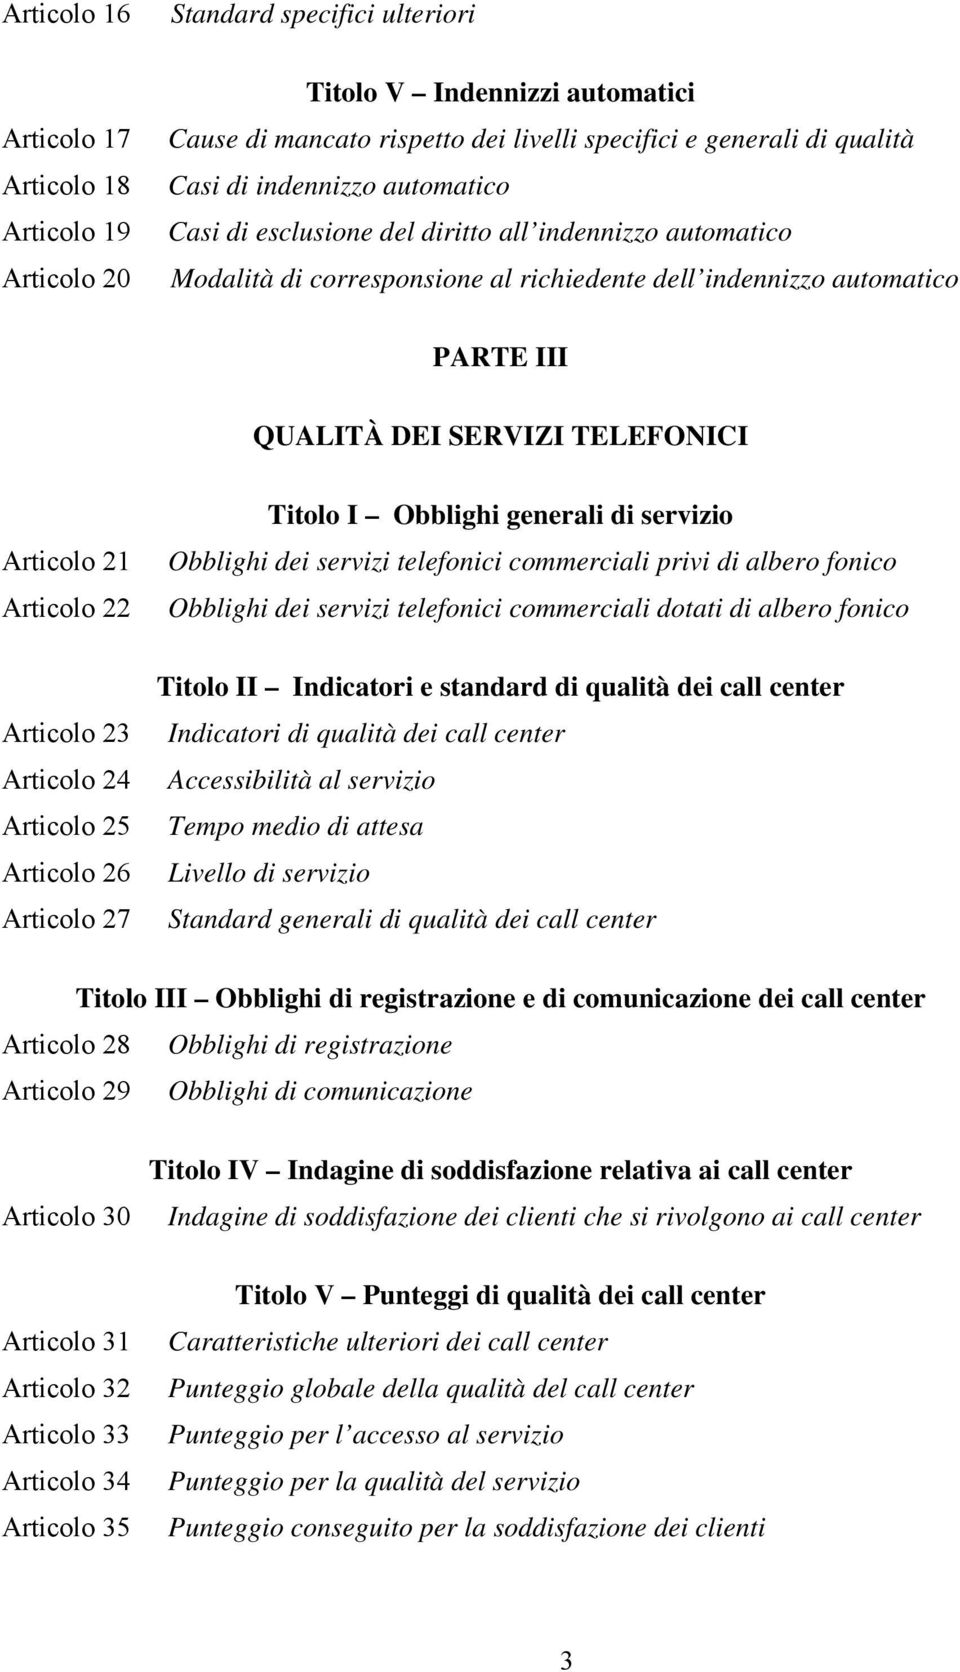 21 Articolo 22 Articolo 23 Articolo 24 Articolo 25 Articolo 26 Articolo 27 Titolo I Obblighi generali di servizio Obblighi dei servizi telefonici commerciali privi di albero fonico Obblighi dei